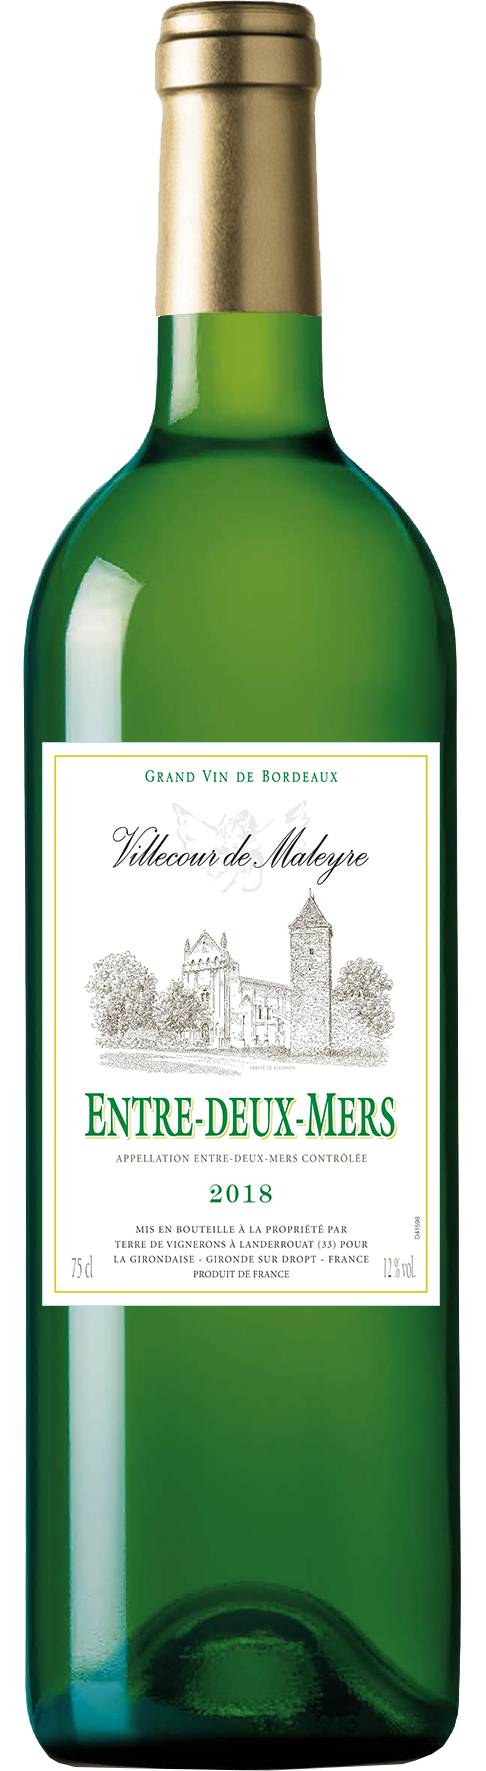 Villecour de Maleyre - Vin blanc entre-deux-mers (750 ml)